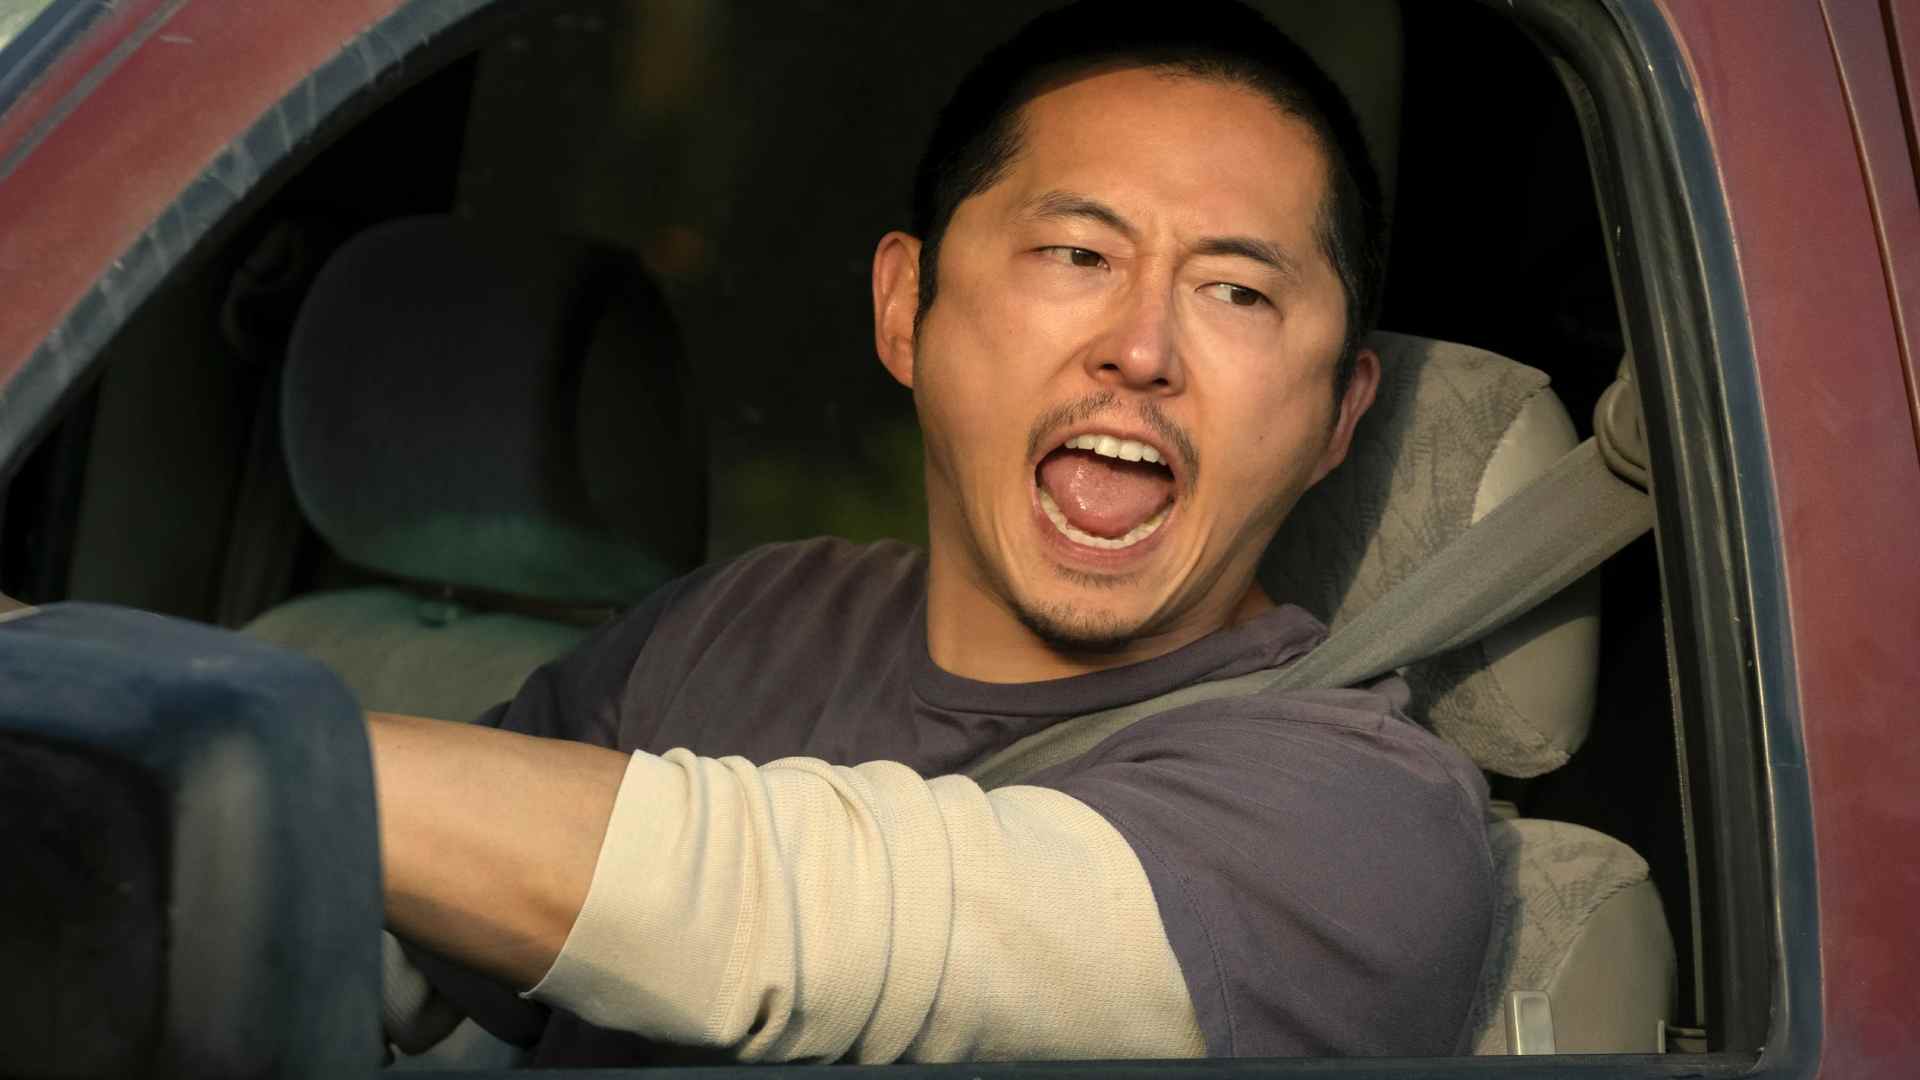 استفن ین در حال جیغ زدن در ماشینش در بیف